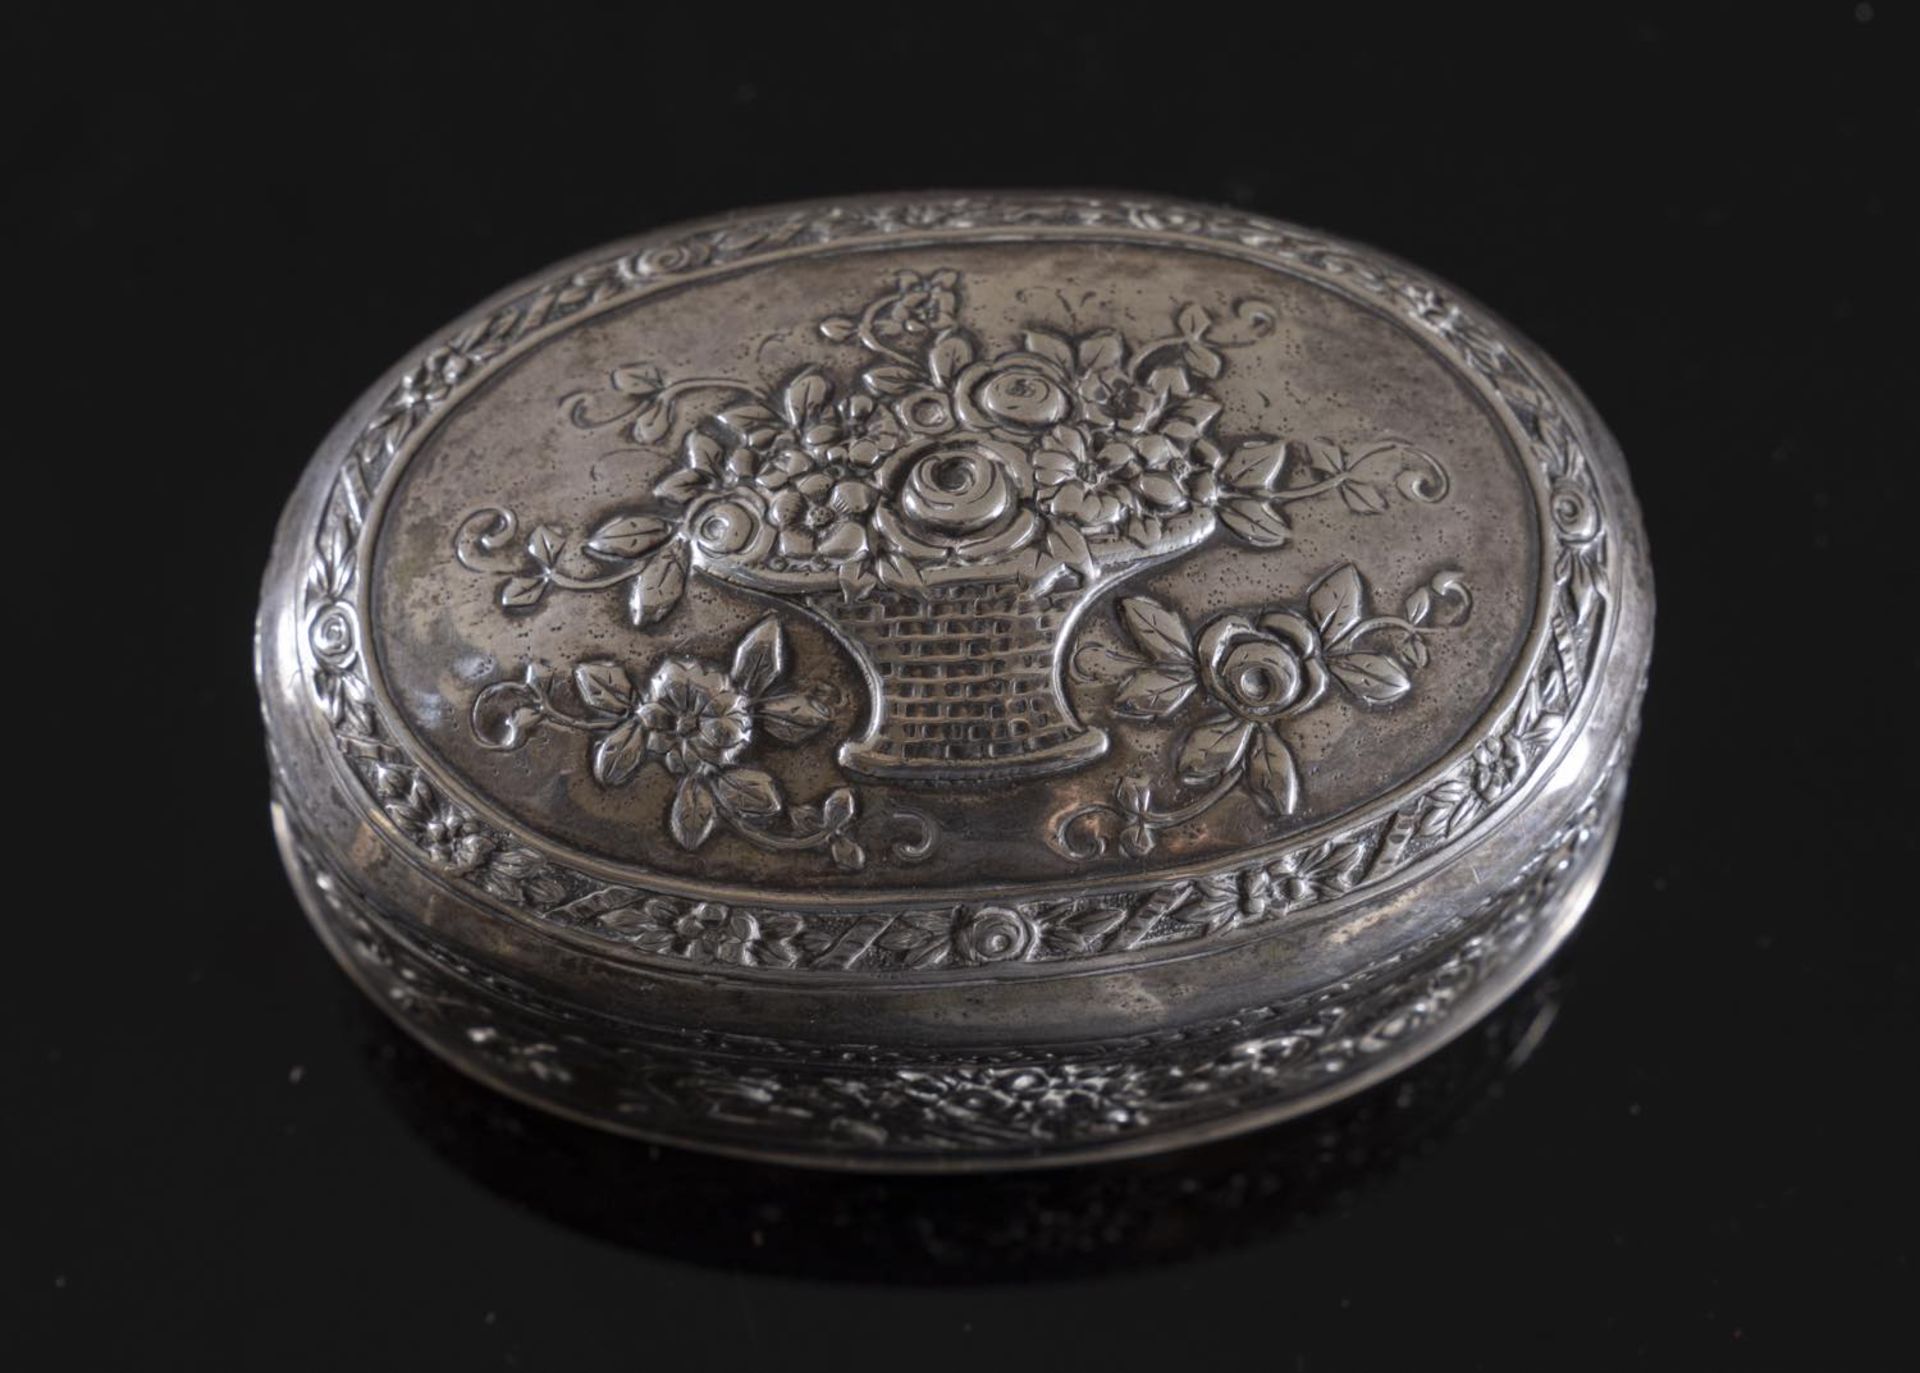 Scatola ovale in argento, XX secolo. Superficie lavorata a sbalzo a motivo floreale, coperchio - Bild 2 aus 2